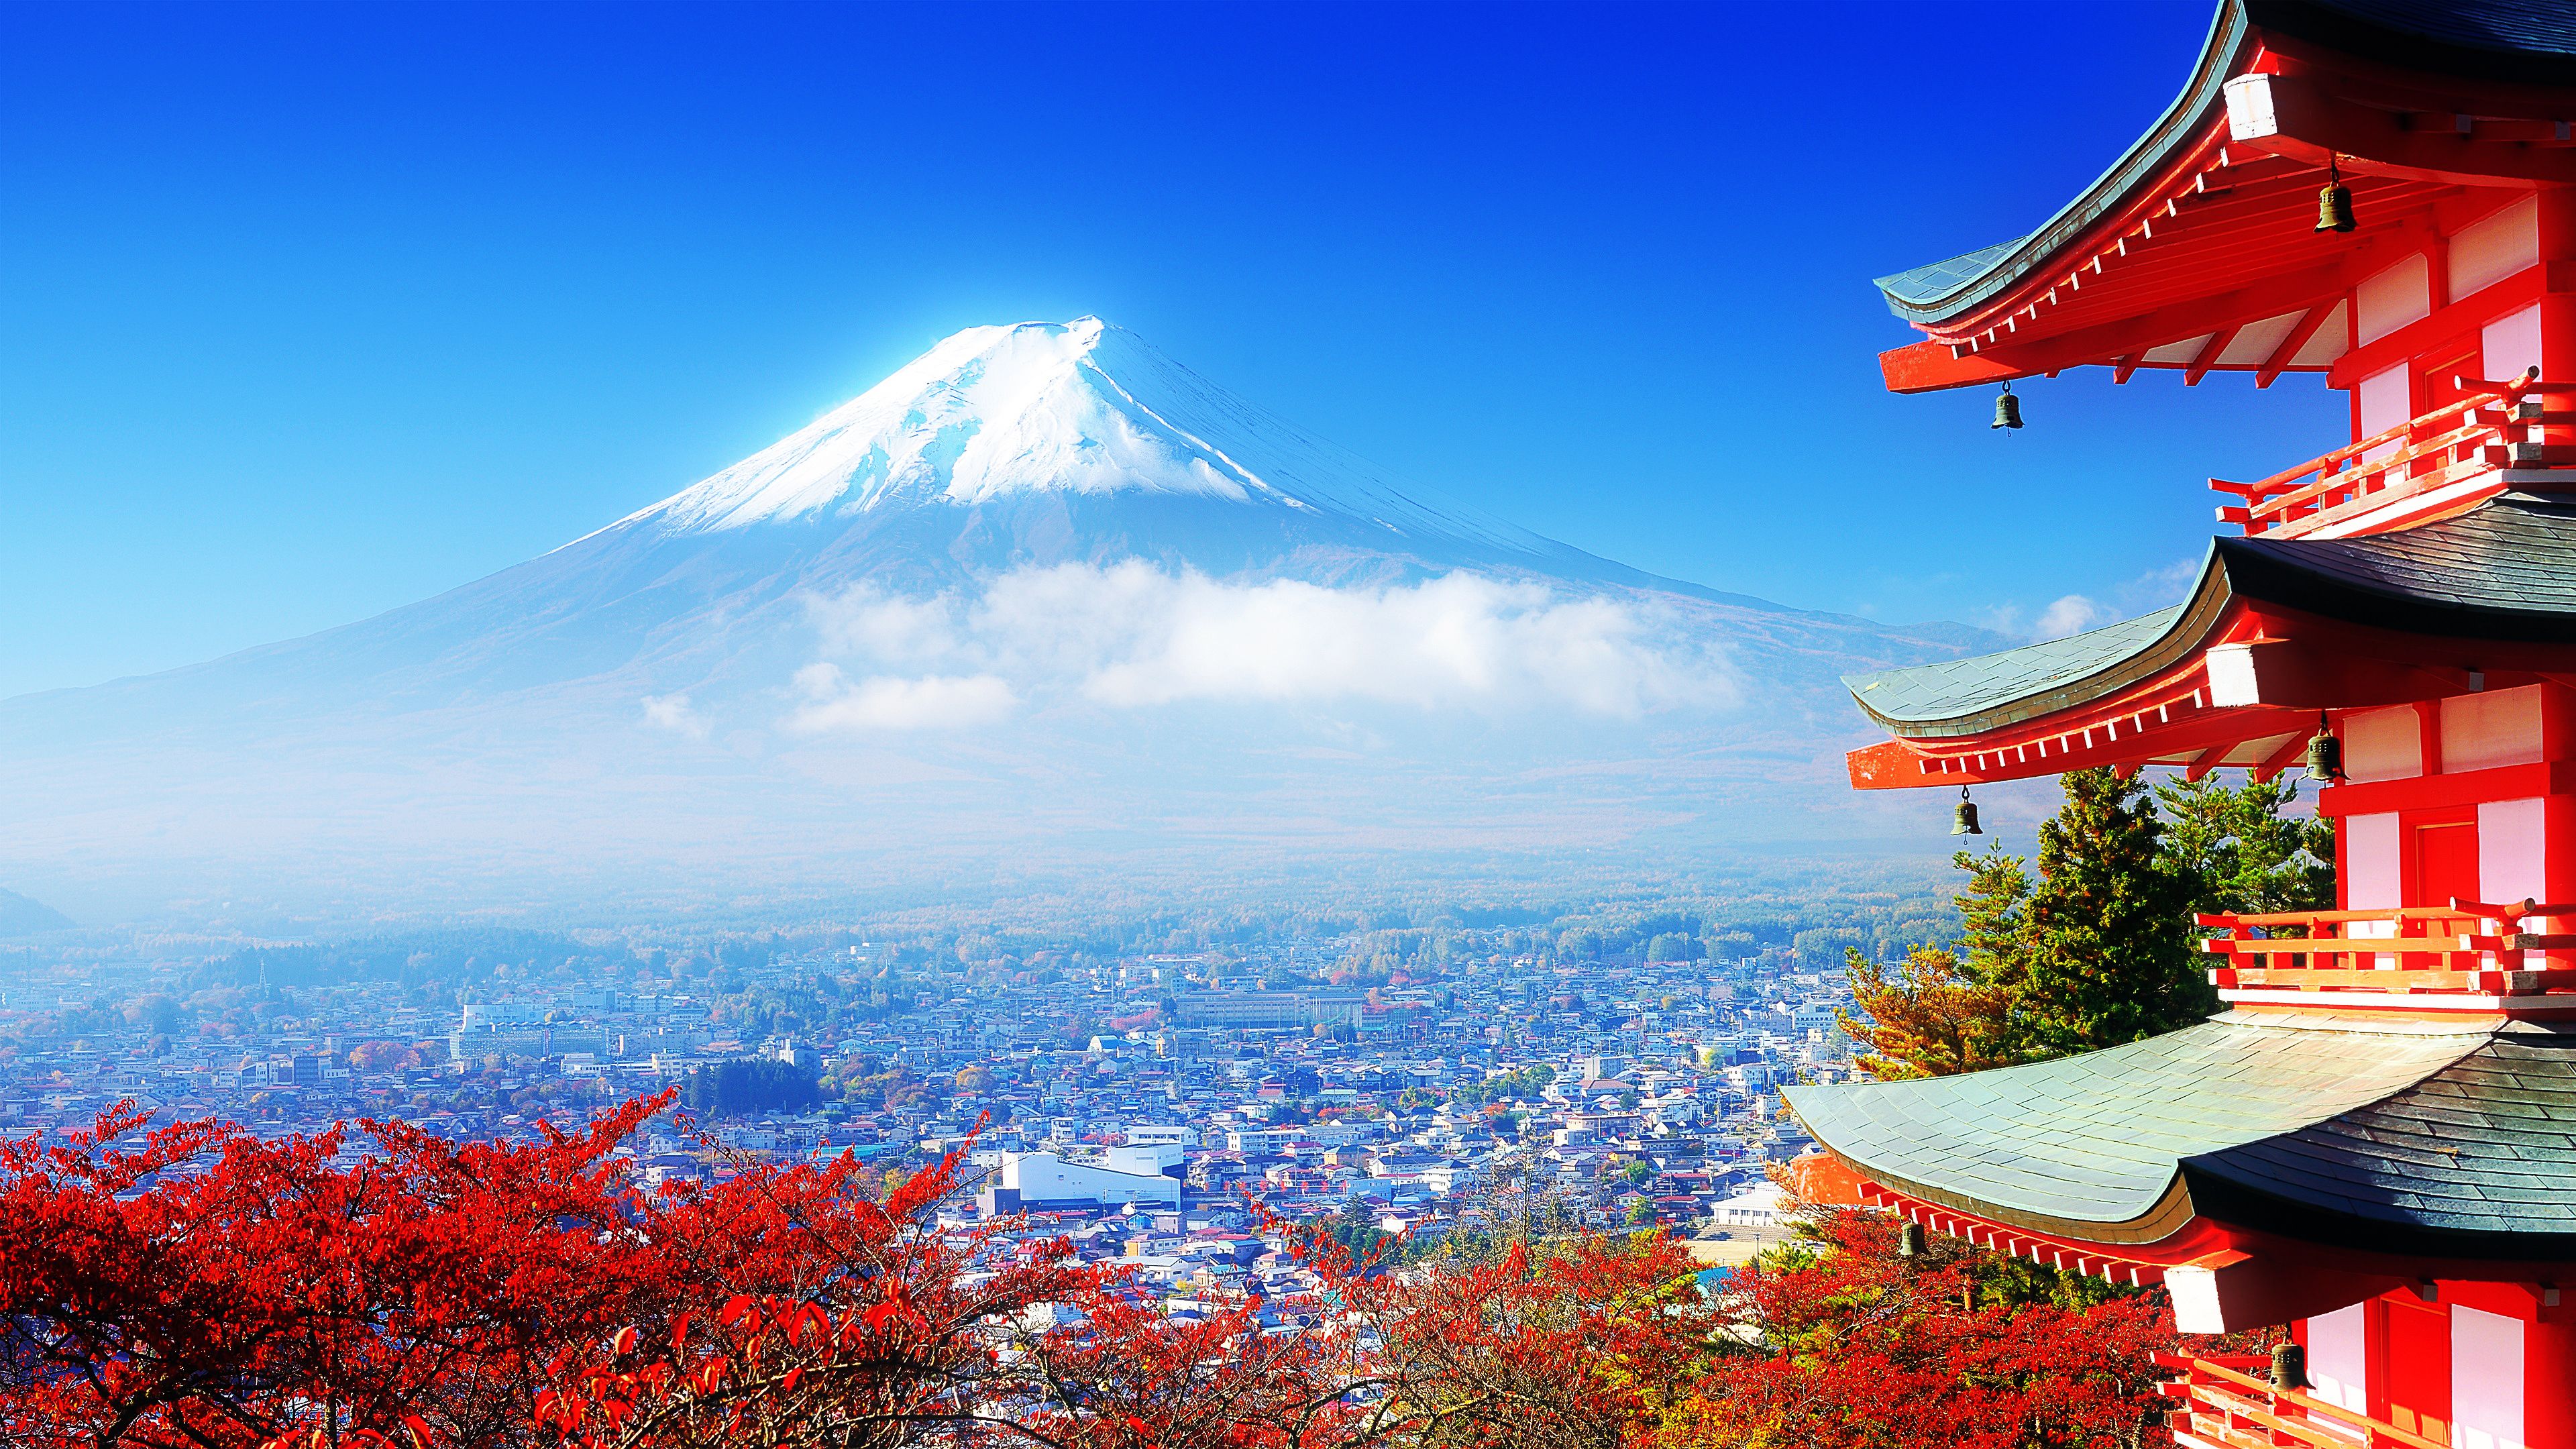 4k Magical Mount Fuji [Wallpaper] by NicolasLFBV. Jepang, Wisata